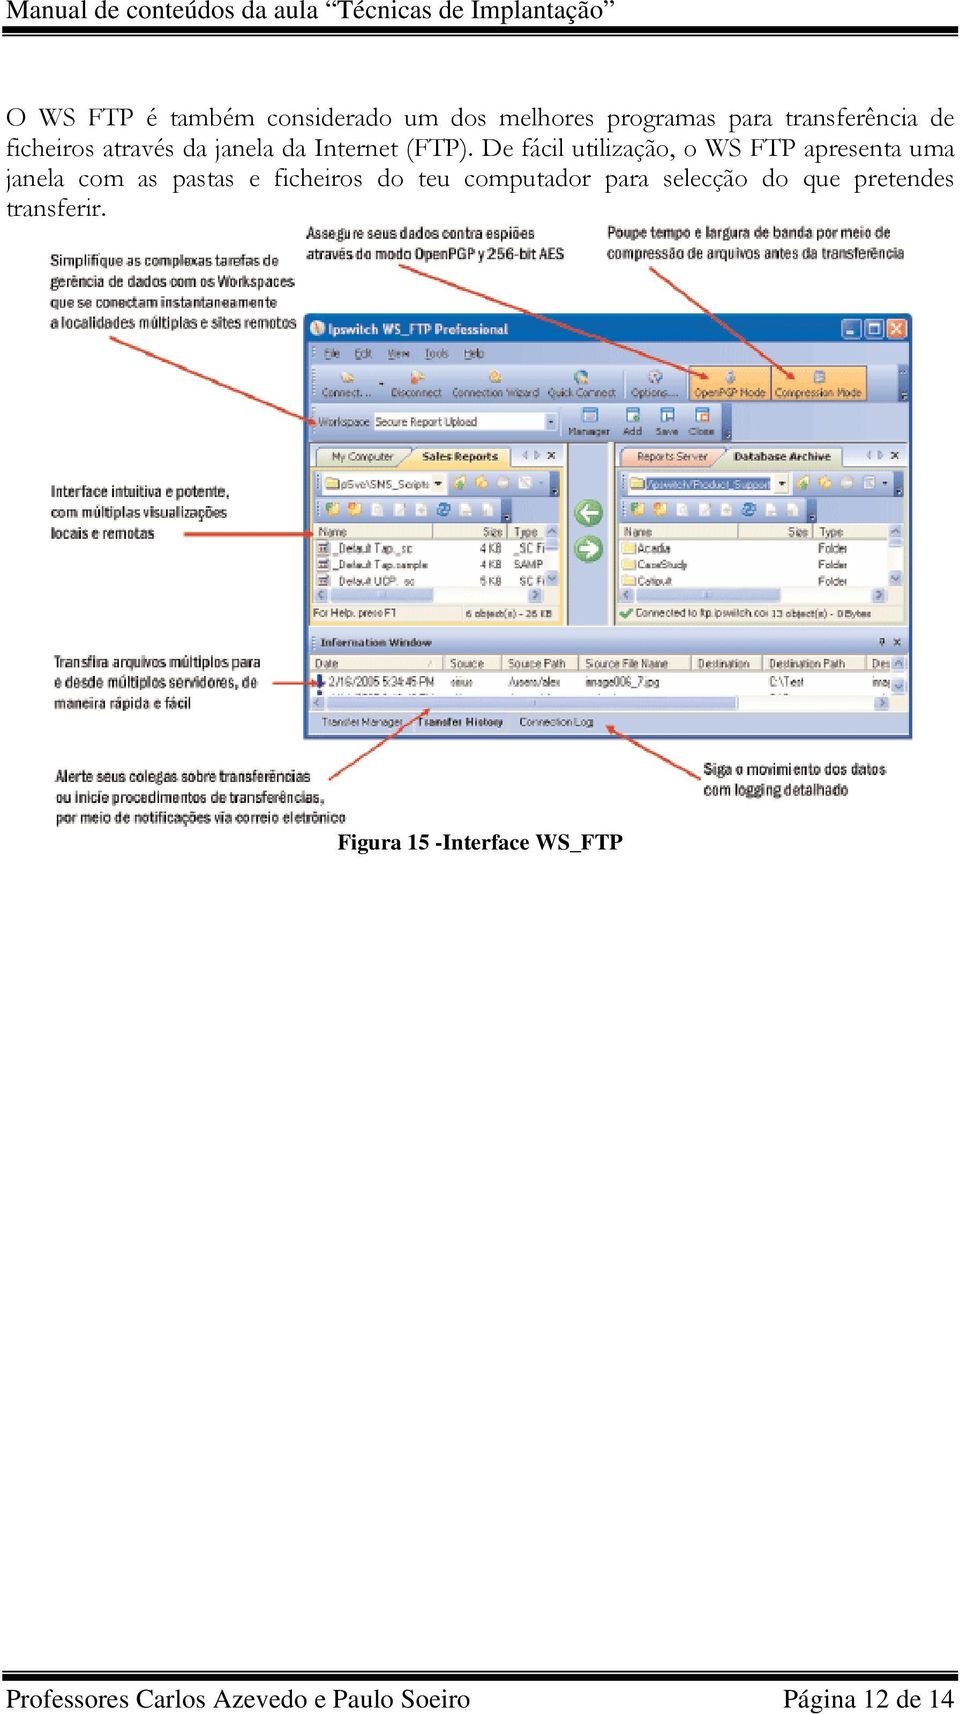 De fácil utilização, o WS FTP apresenta uma janela com as pastas e ficheiros do teu